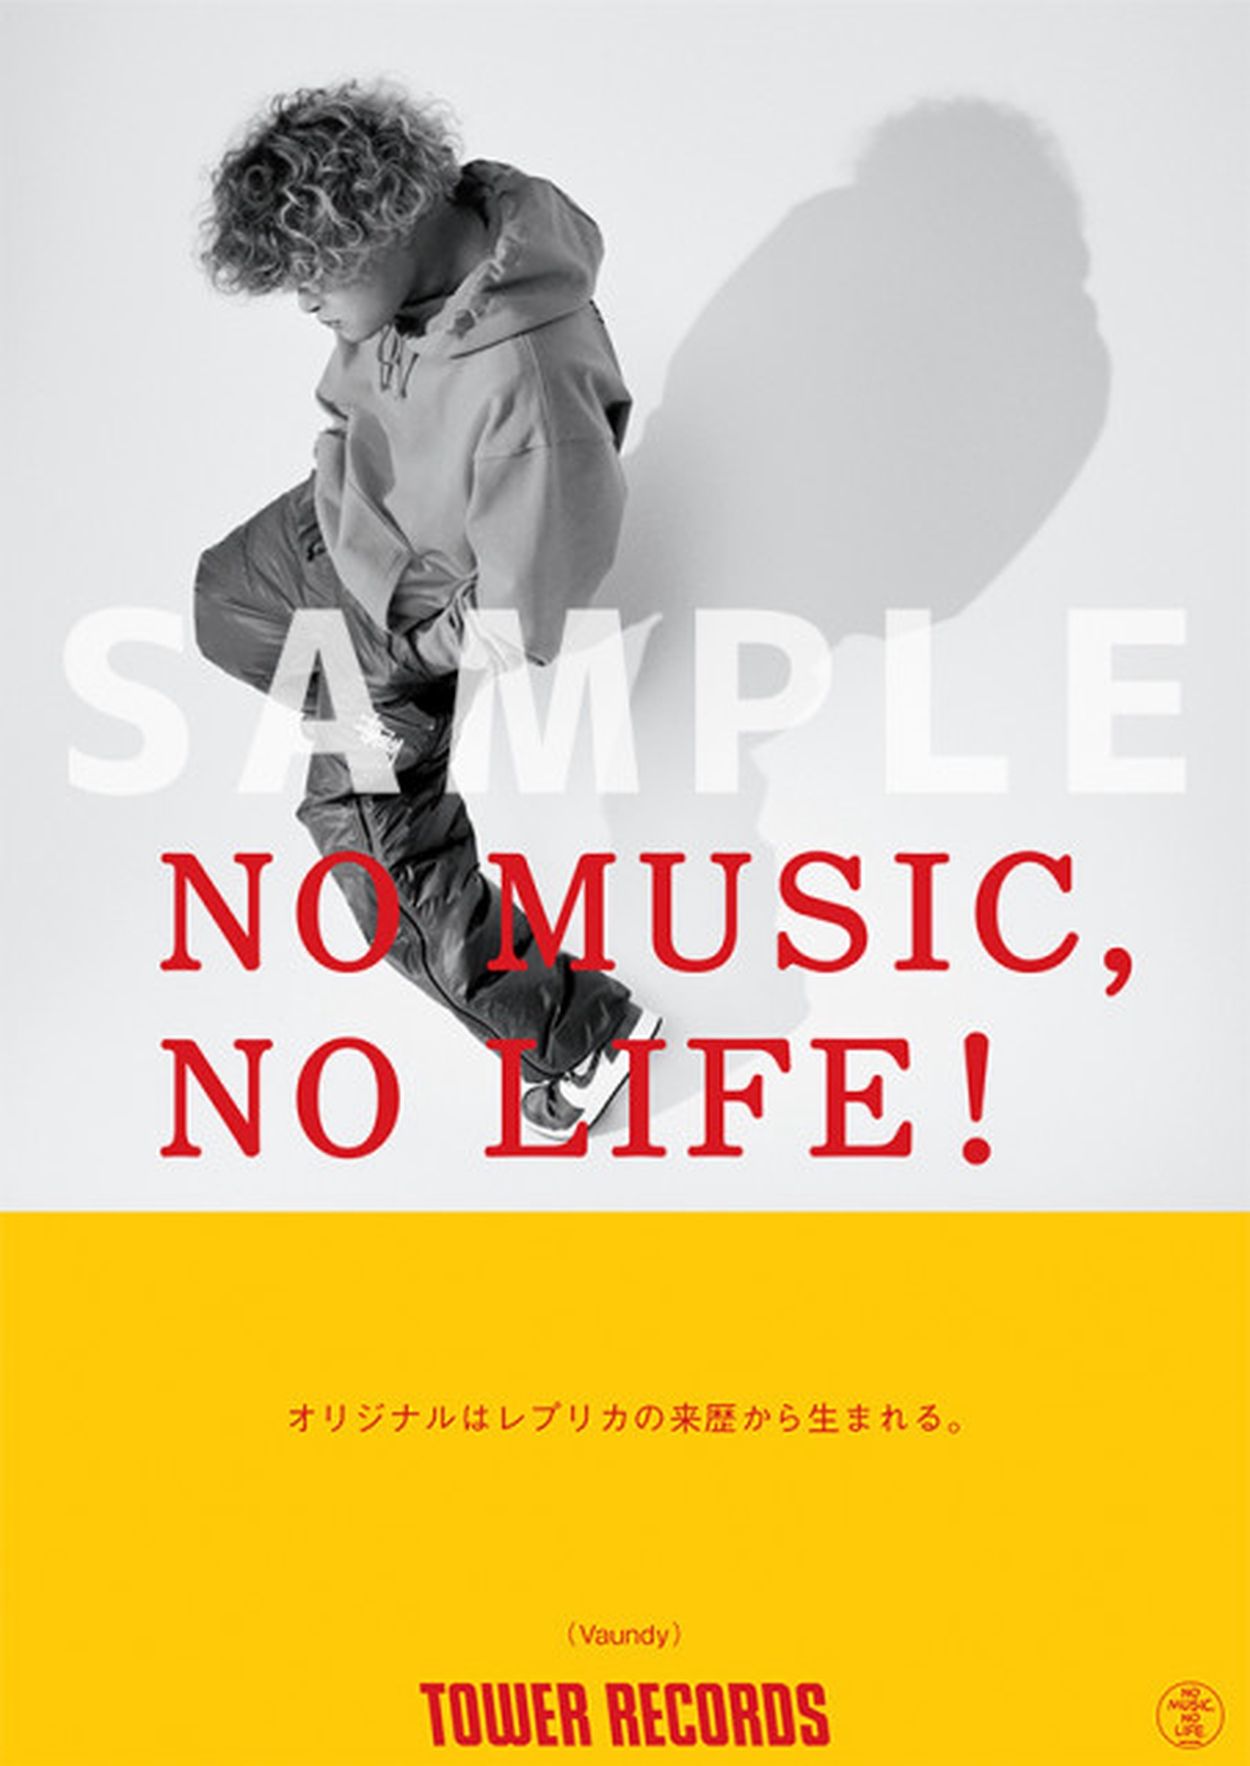 超特大ポスター カネコアヤノ タワーレコード NO MUSIC NO LIFE 